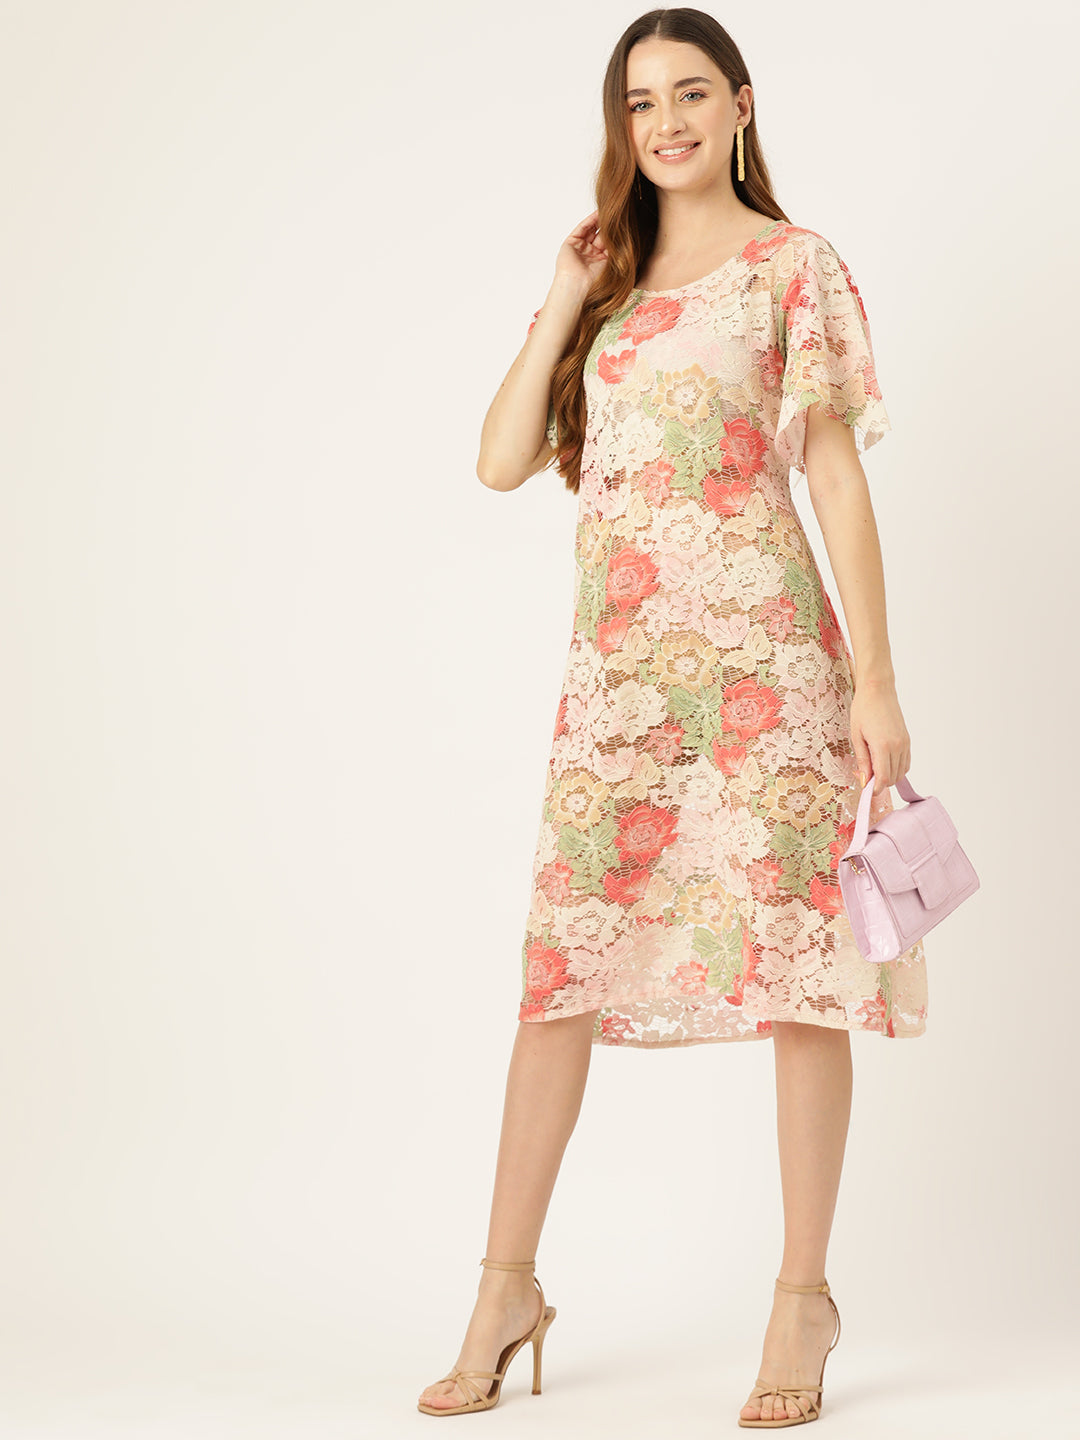 Designer Pink Lace Dress